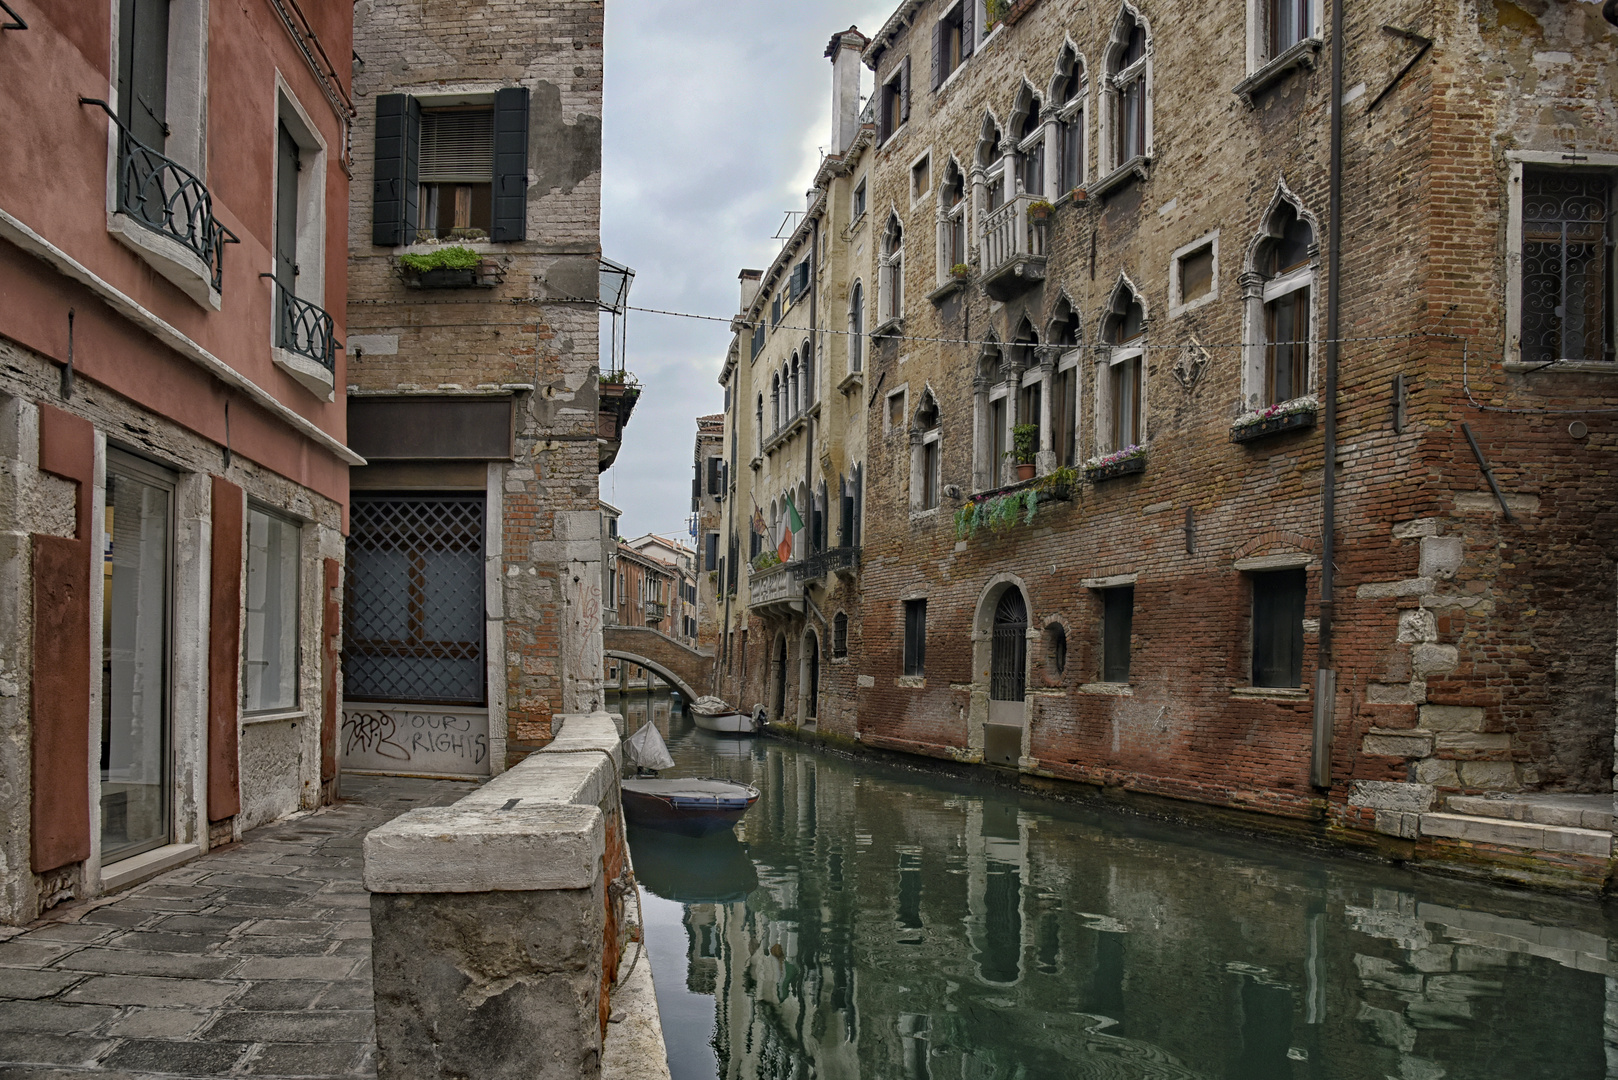 Venedig 2 #